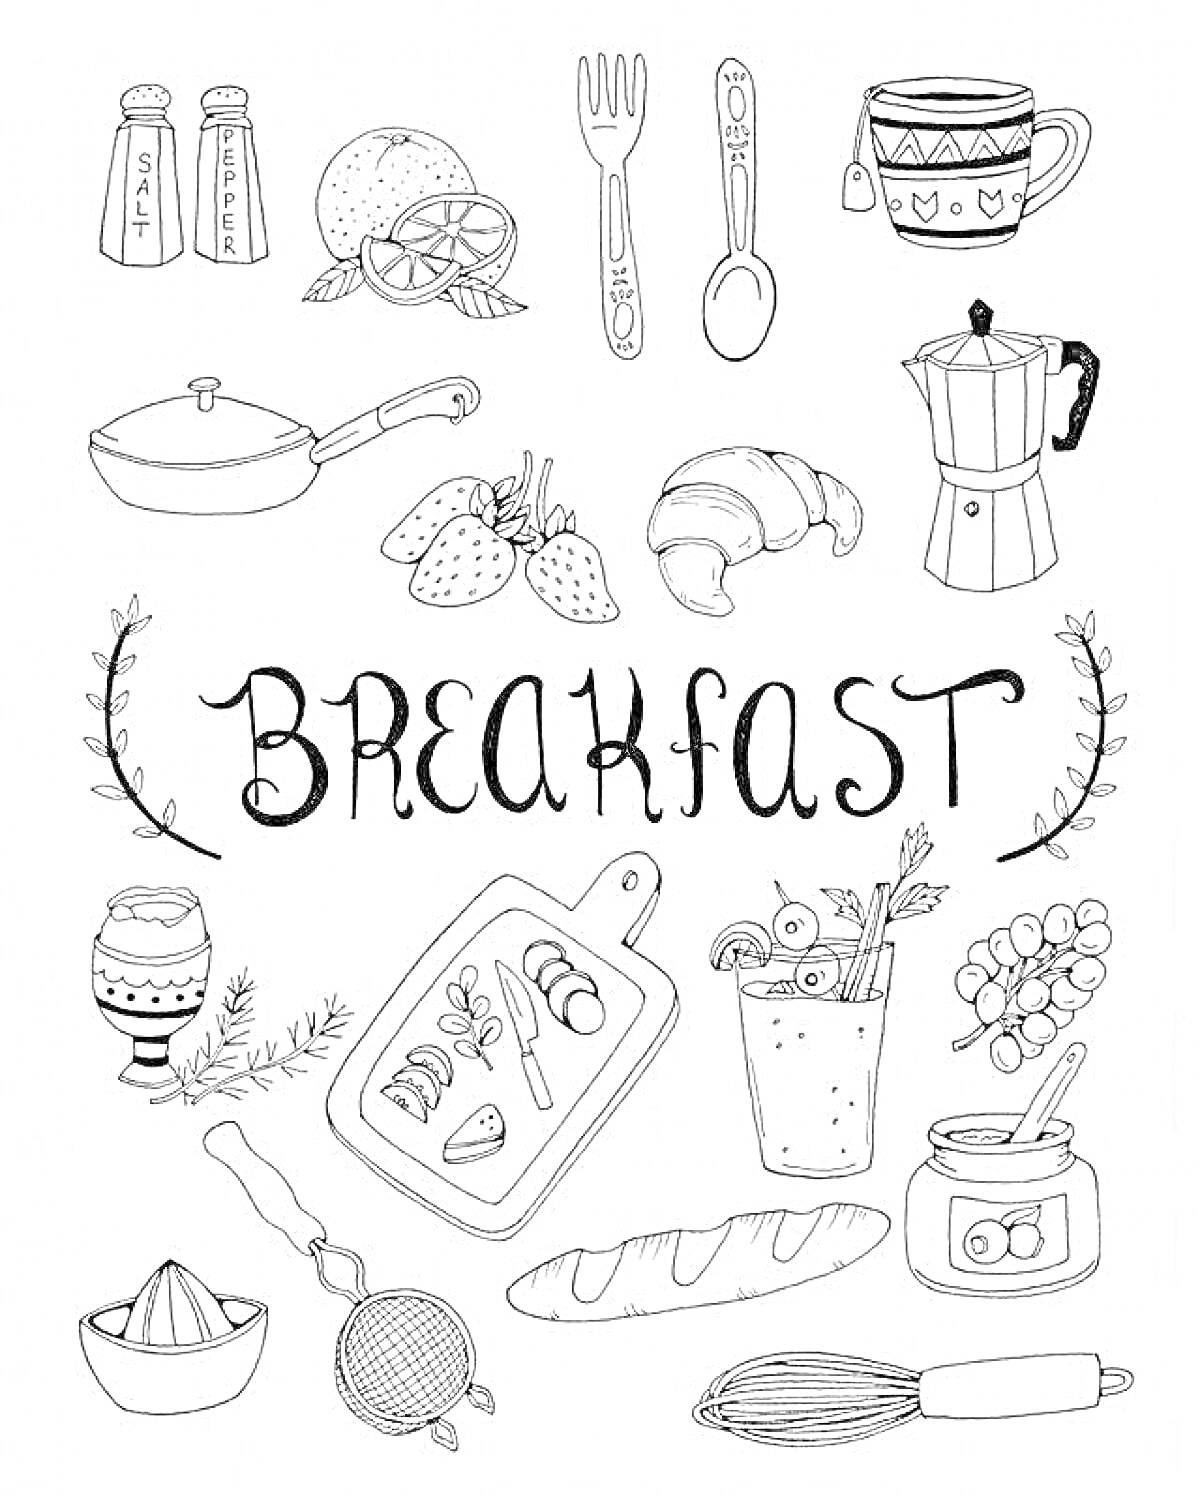 Завтрак с кухонными принадлежностями и едой: сковорода, солонка и перечница, половина апельсина, вилка, ложка, чашка с рисунком, гейзерная кофеварка, круассан, клубника, варёное яйцо в подставке, розмарин, разделочная доска с нарезанными фруктами и колбас